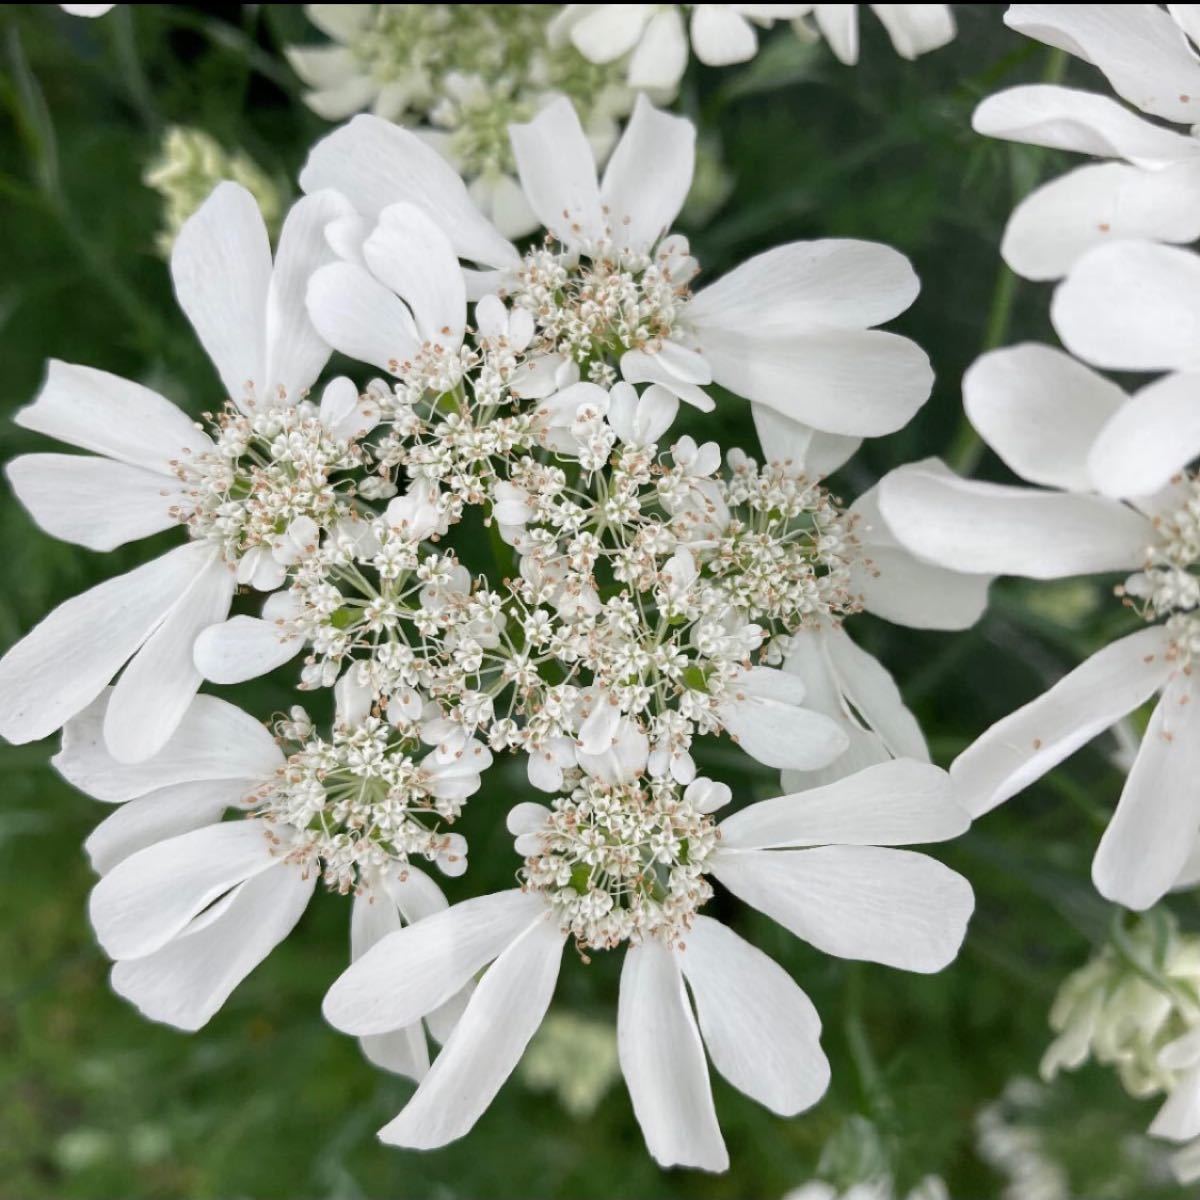 Paypayフリマ 秋まきのお花の種 こぼれ種で育つオルラヤホワイトレース100粒